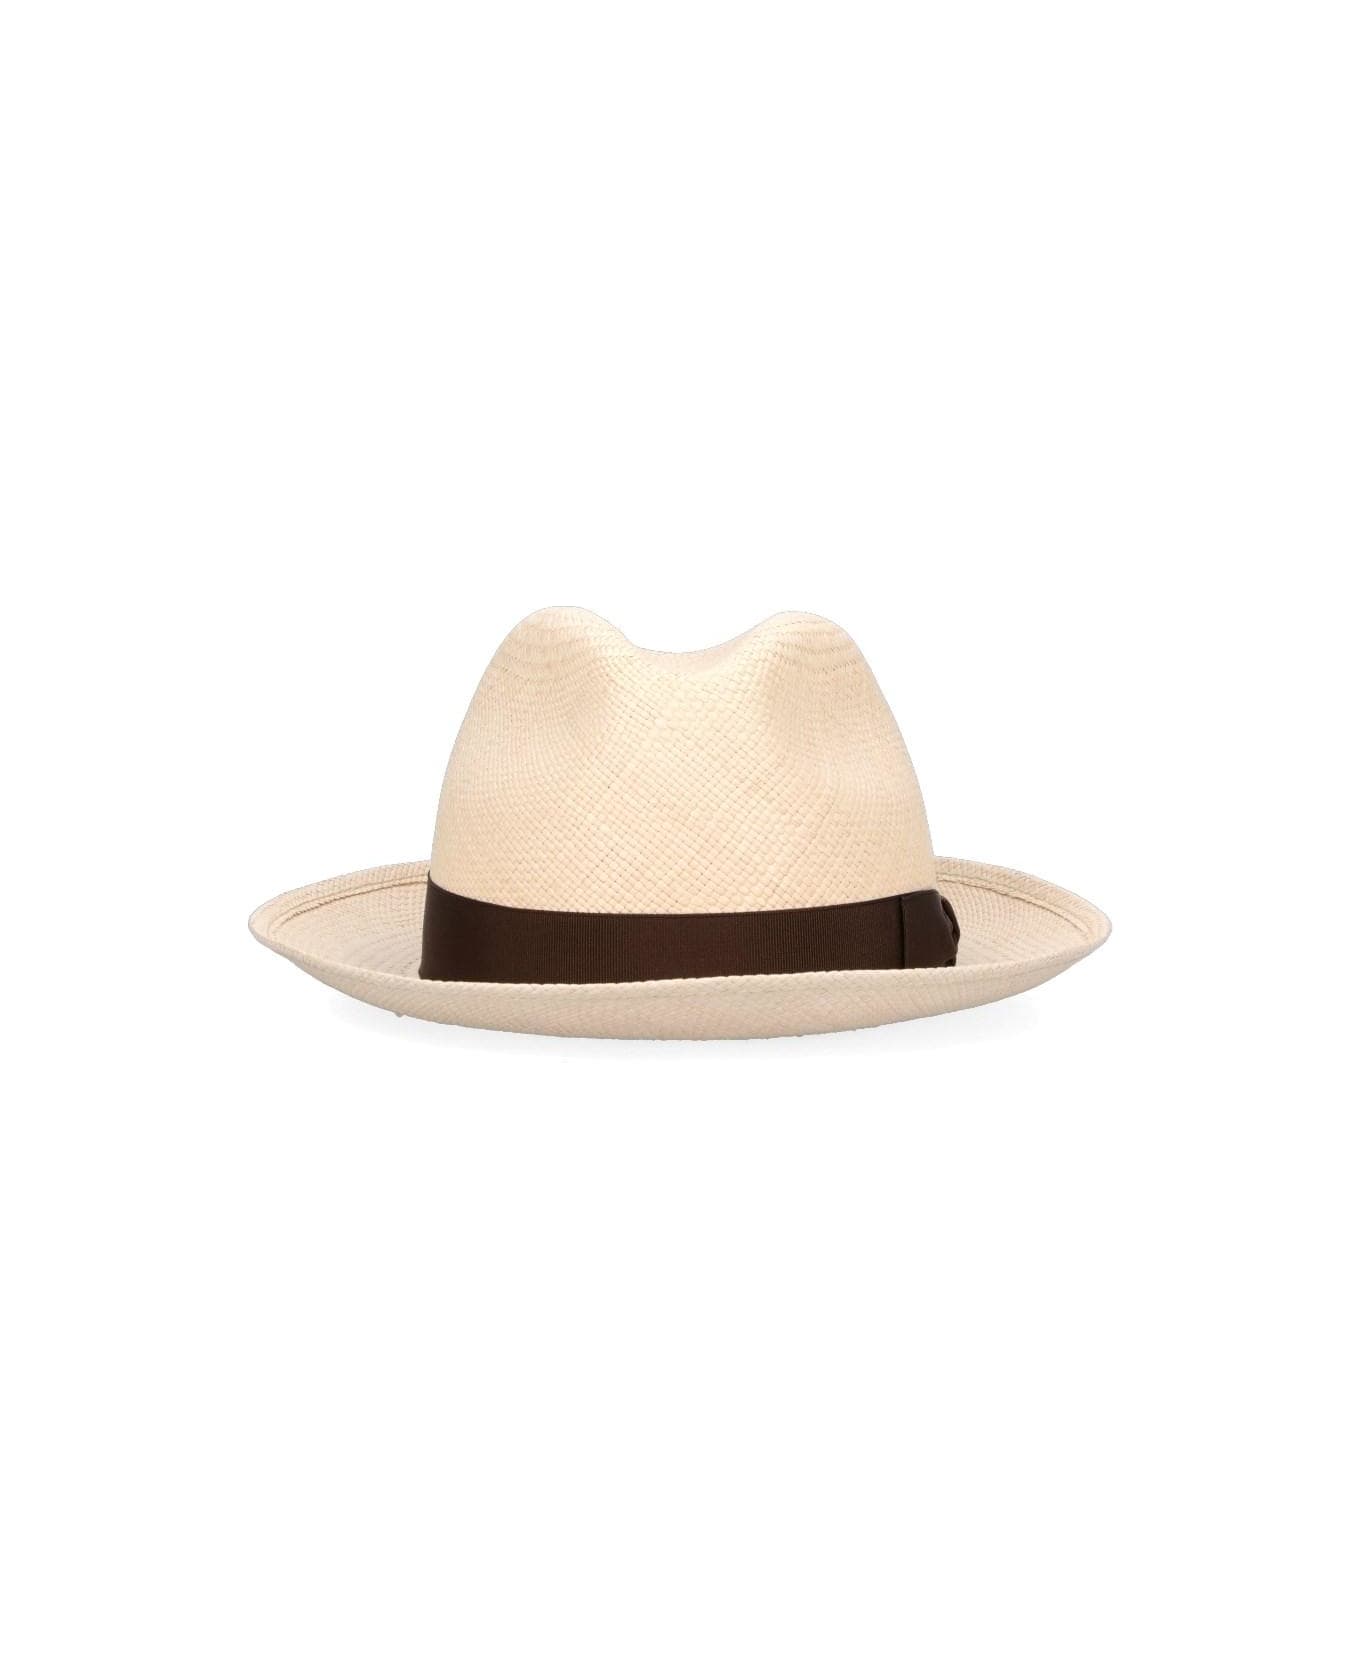 Borsalino 'panama' Hat - Naturale